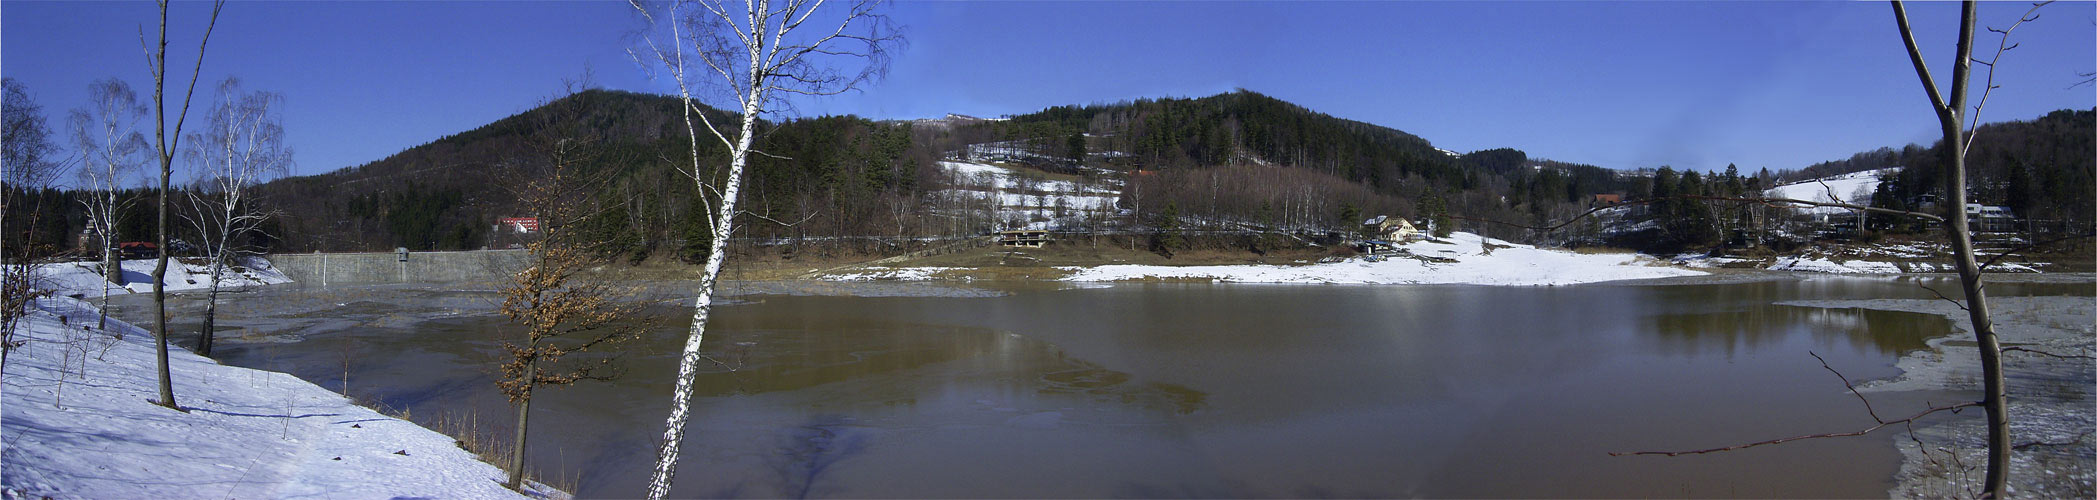 Vypuštěná přehrada Bystřička - březen 2005